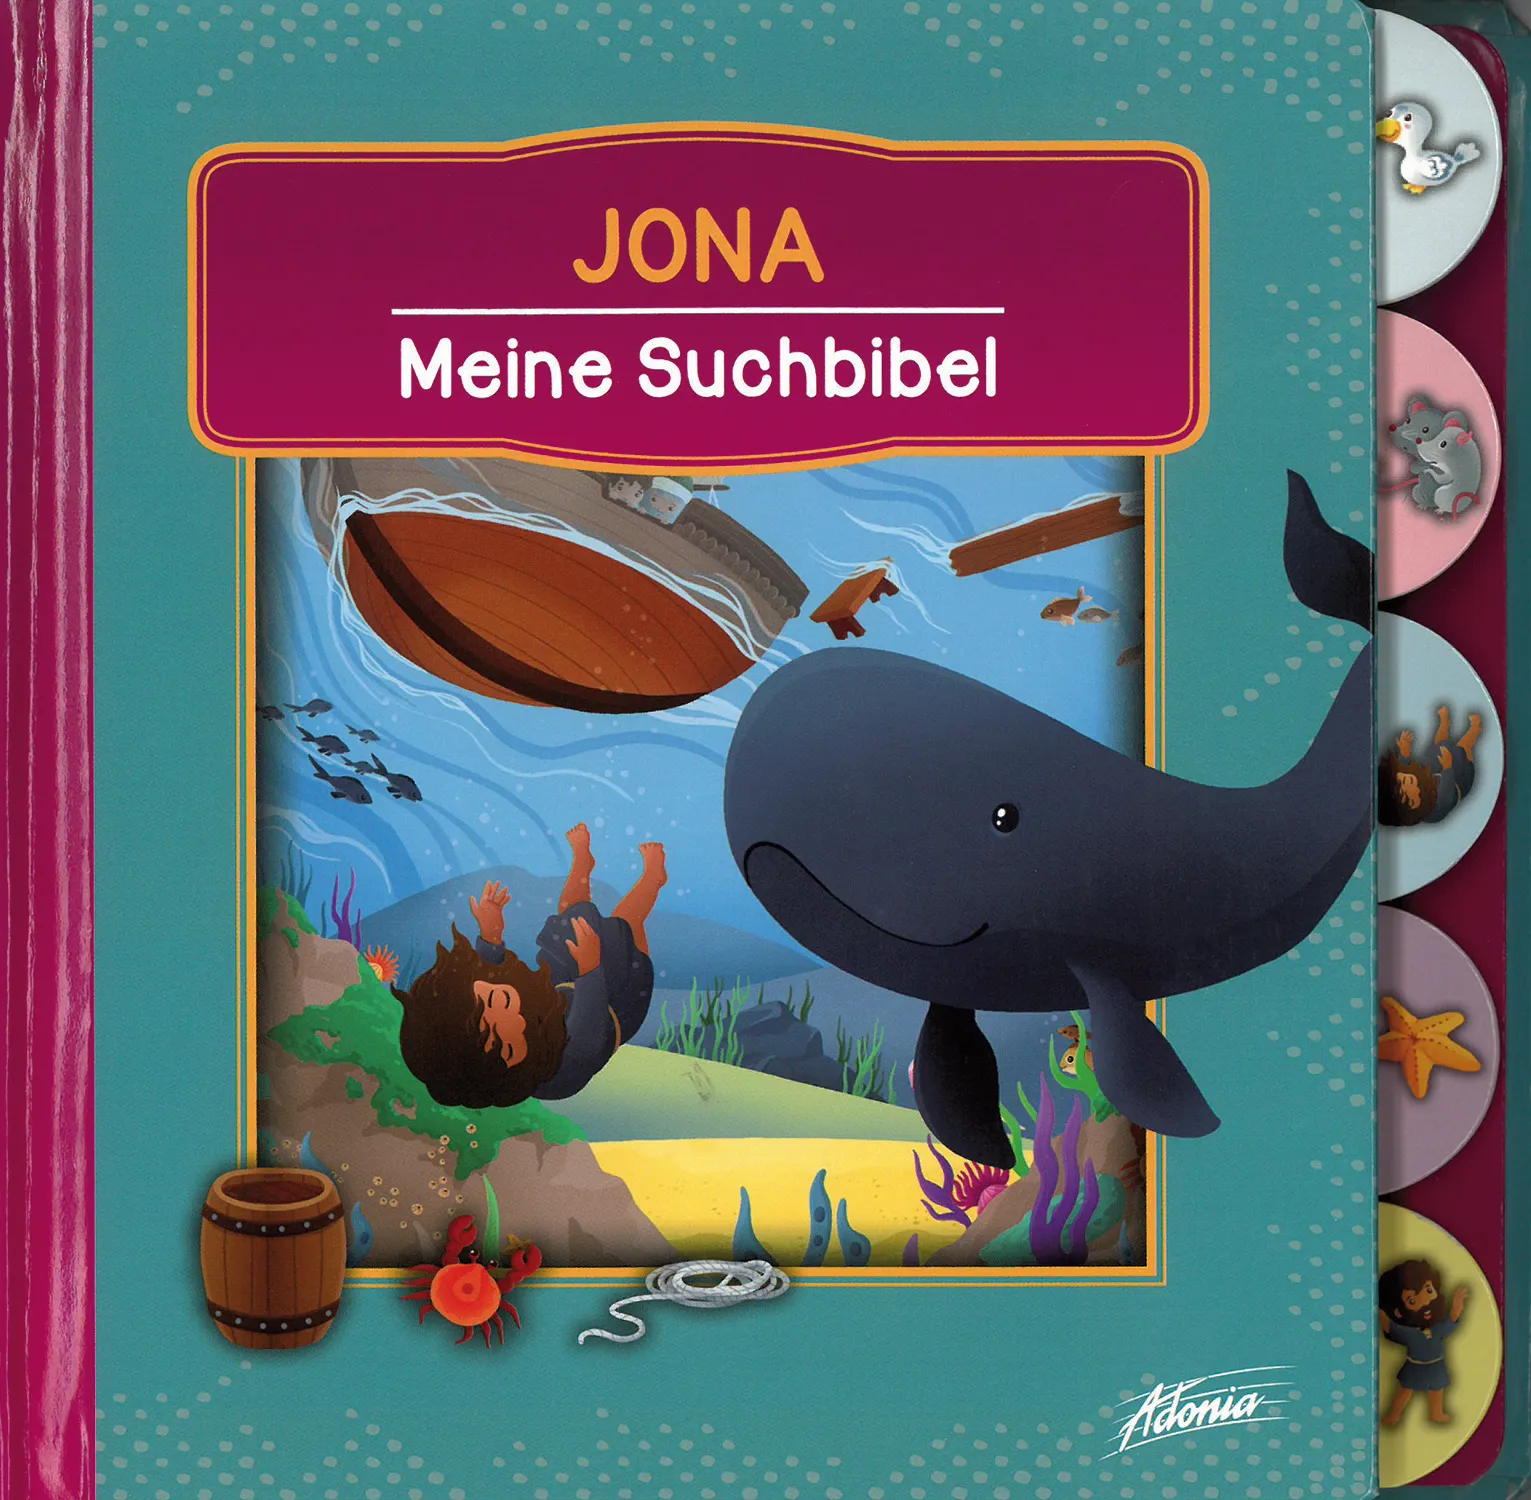 Jona - Meine Suchbibel